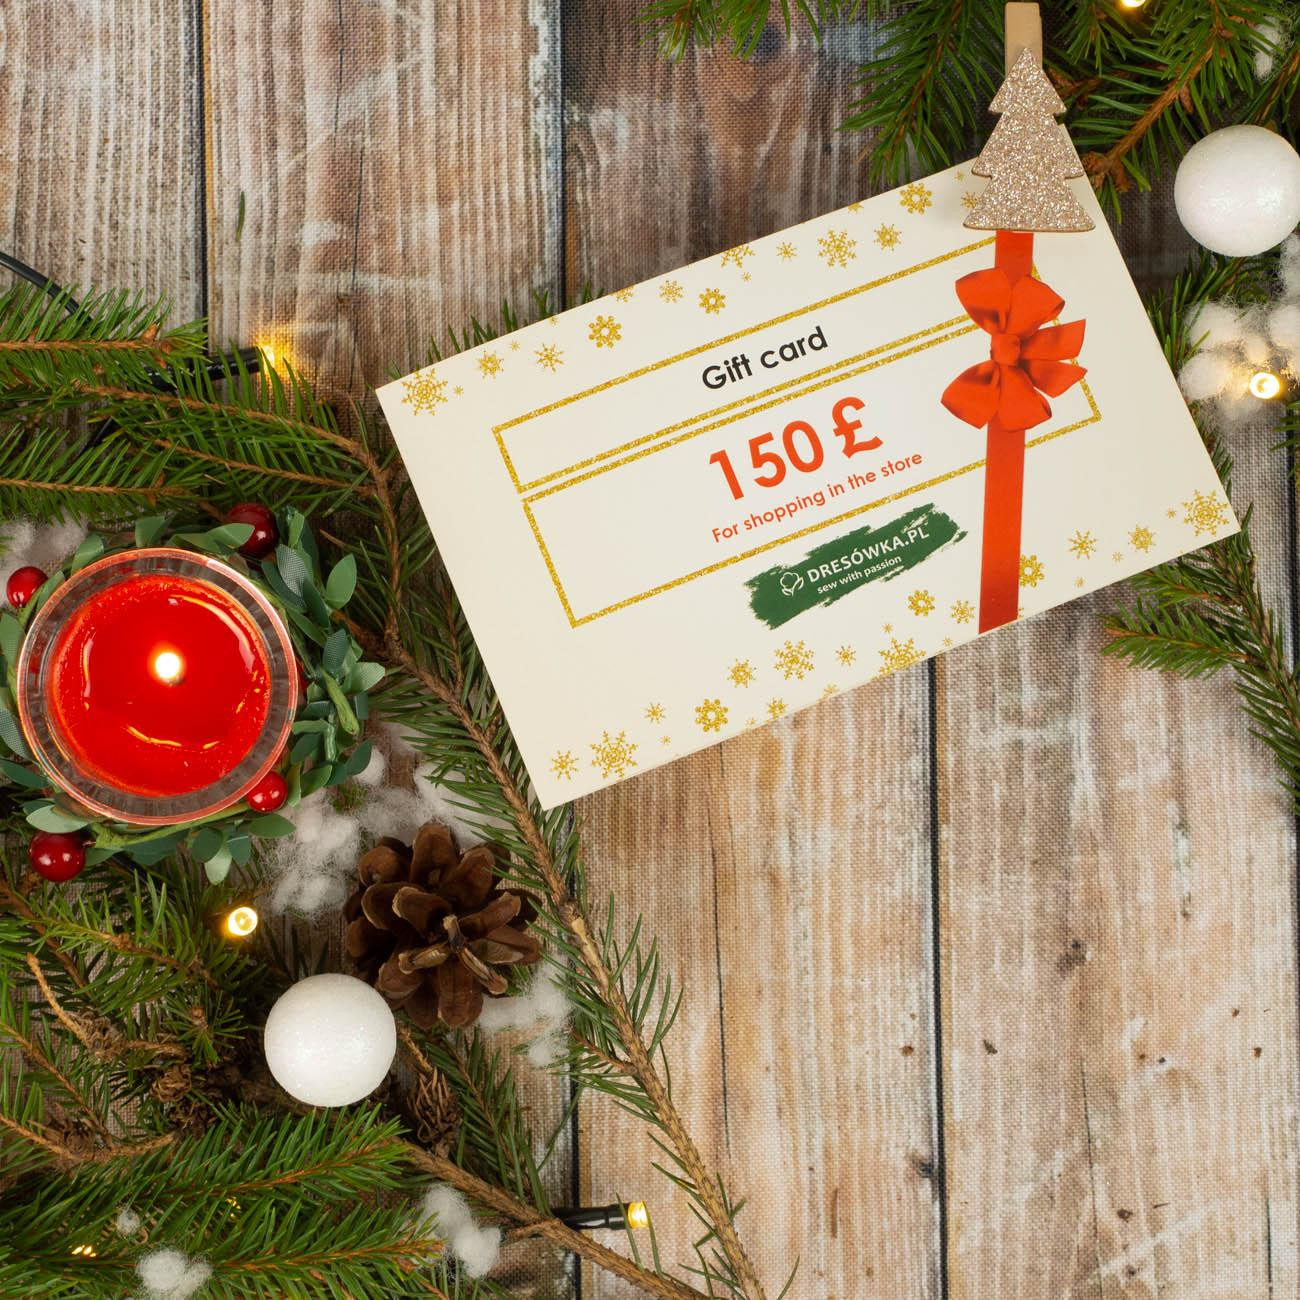 CHRISTMAS GIFT CARD - 150 GBP